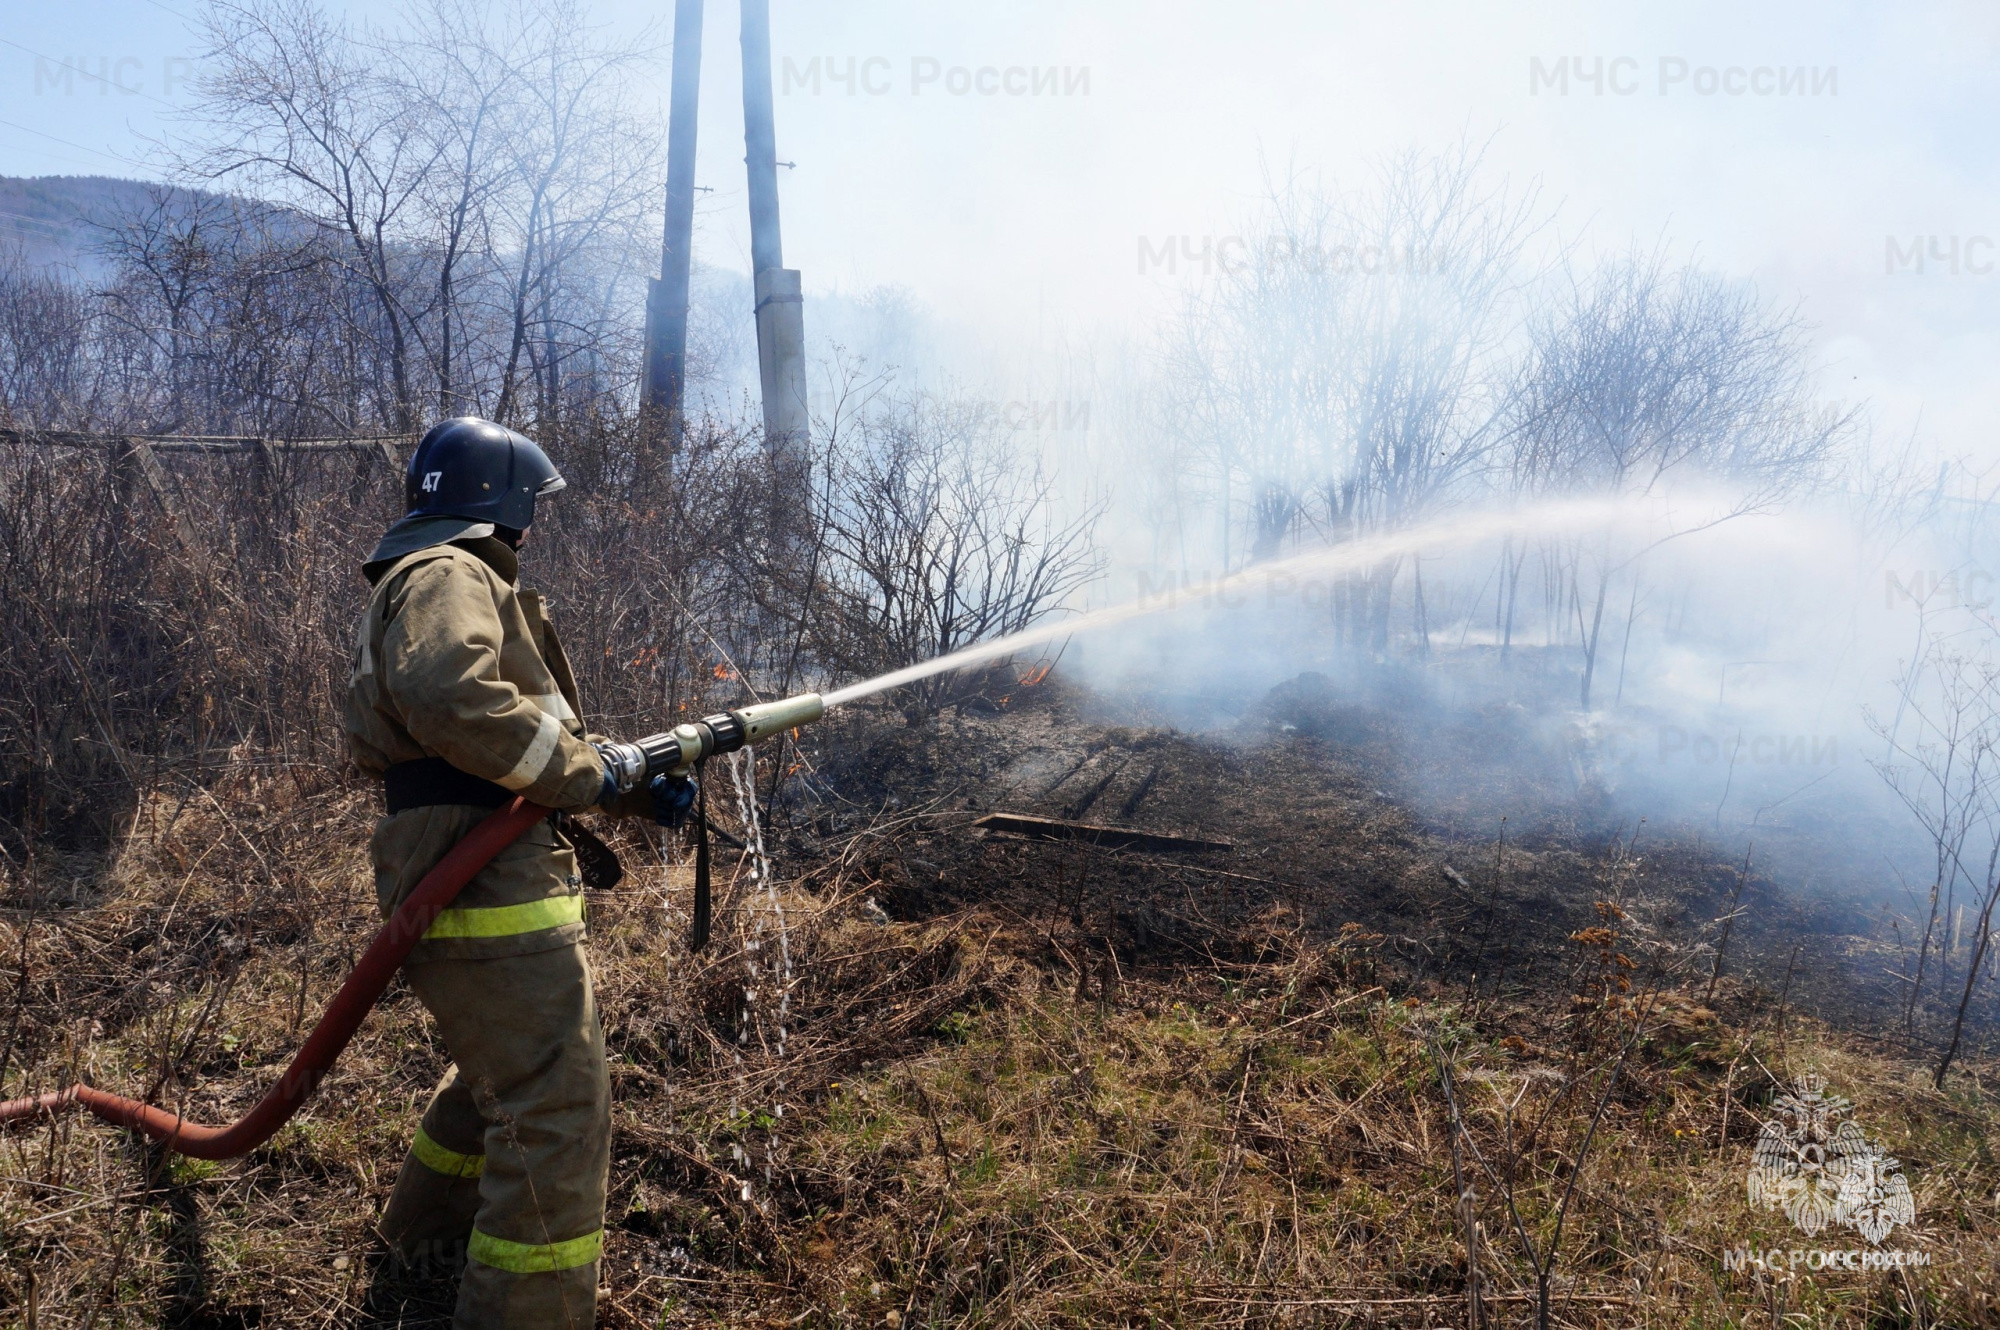 Пожароопасный сезон в Оренбургской области ещё не стартовал, однако в регионе уже зарегистрированы первые возгорания сухой прошлогодней растительности..